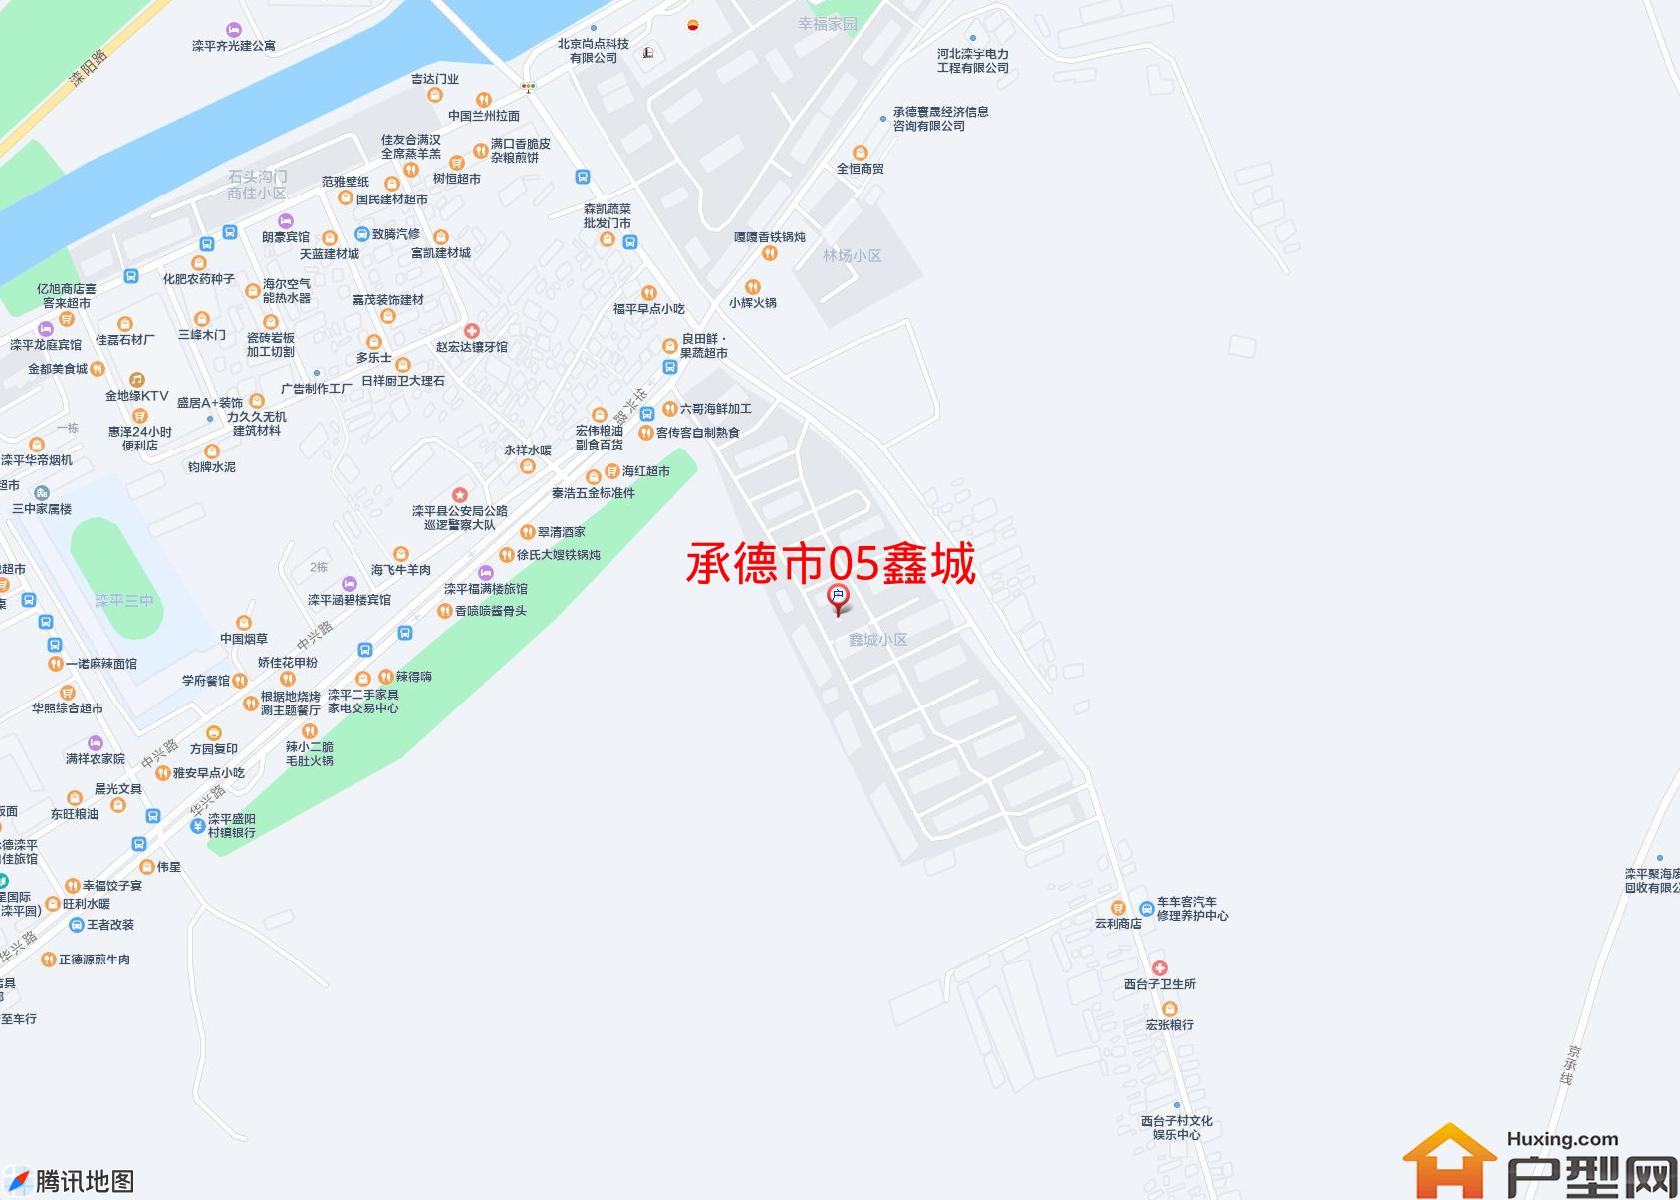 05鑫城小区 - 户型网